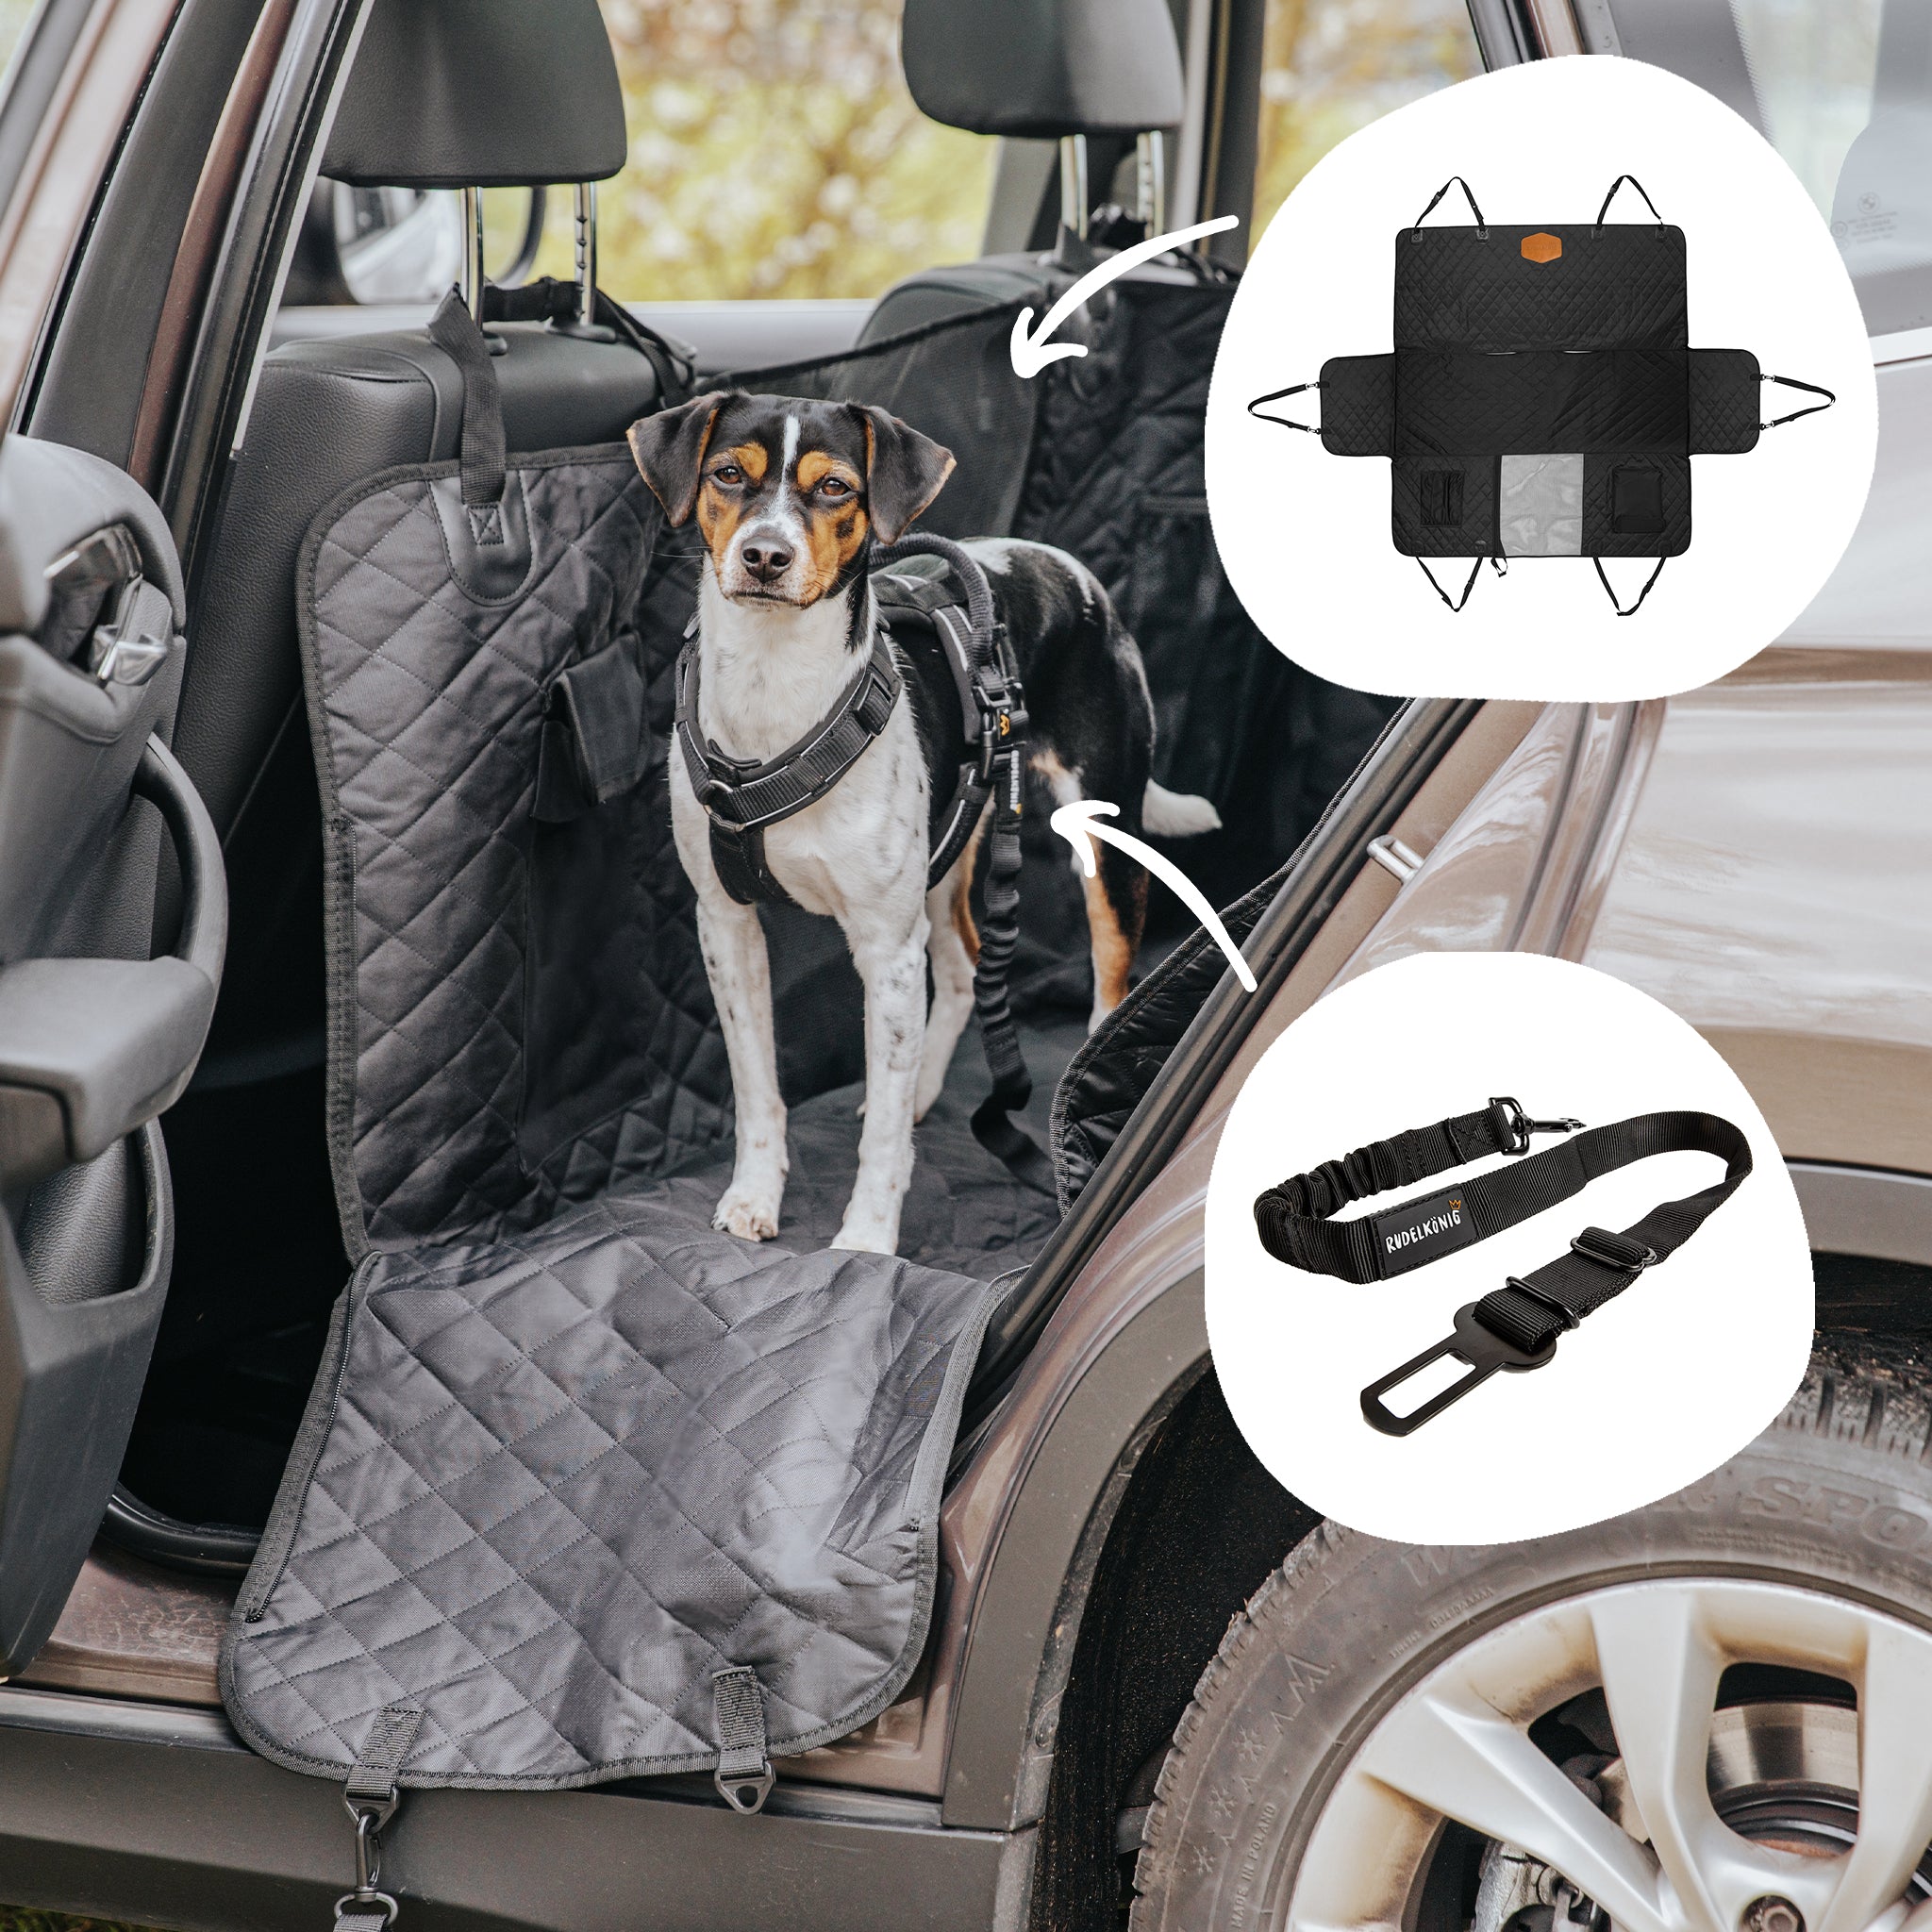 Das Reise-Set für Hunde mit 10 % Rabatt bietet einen praktischen Rücksitzschutz und Sicherheitsgurt für den Hund im Auto.